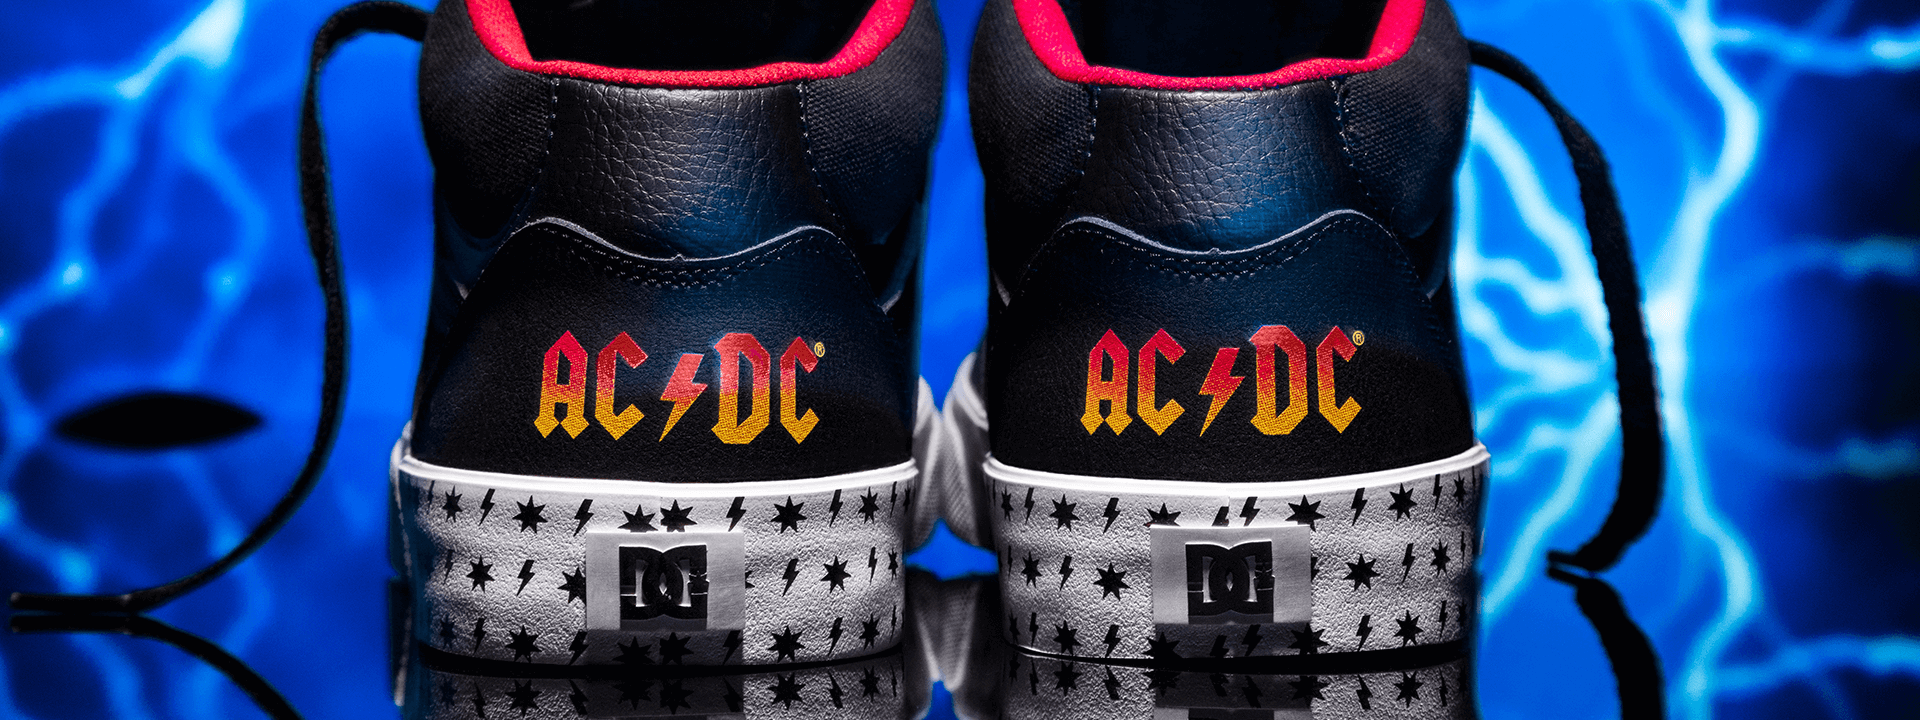 Visión general emulsión es suficiente AC/DC x DC Shoes Colección Hombre - Comprar en Línea | DC Shoes